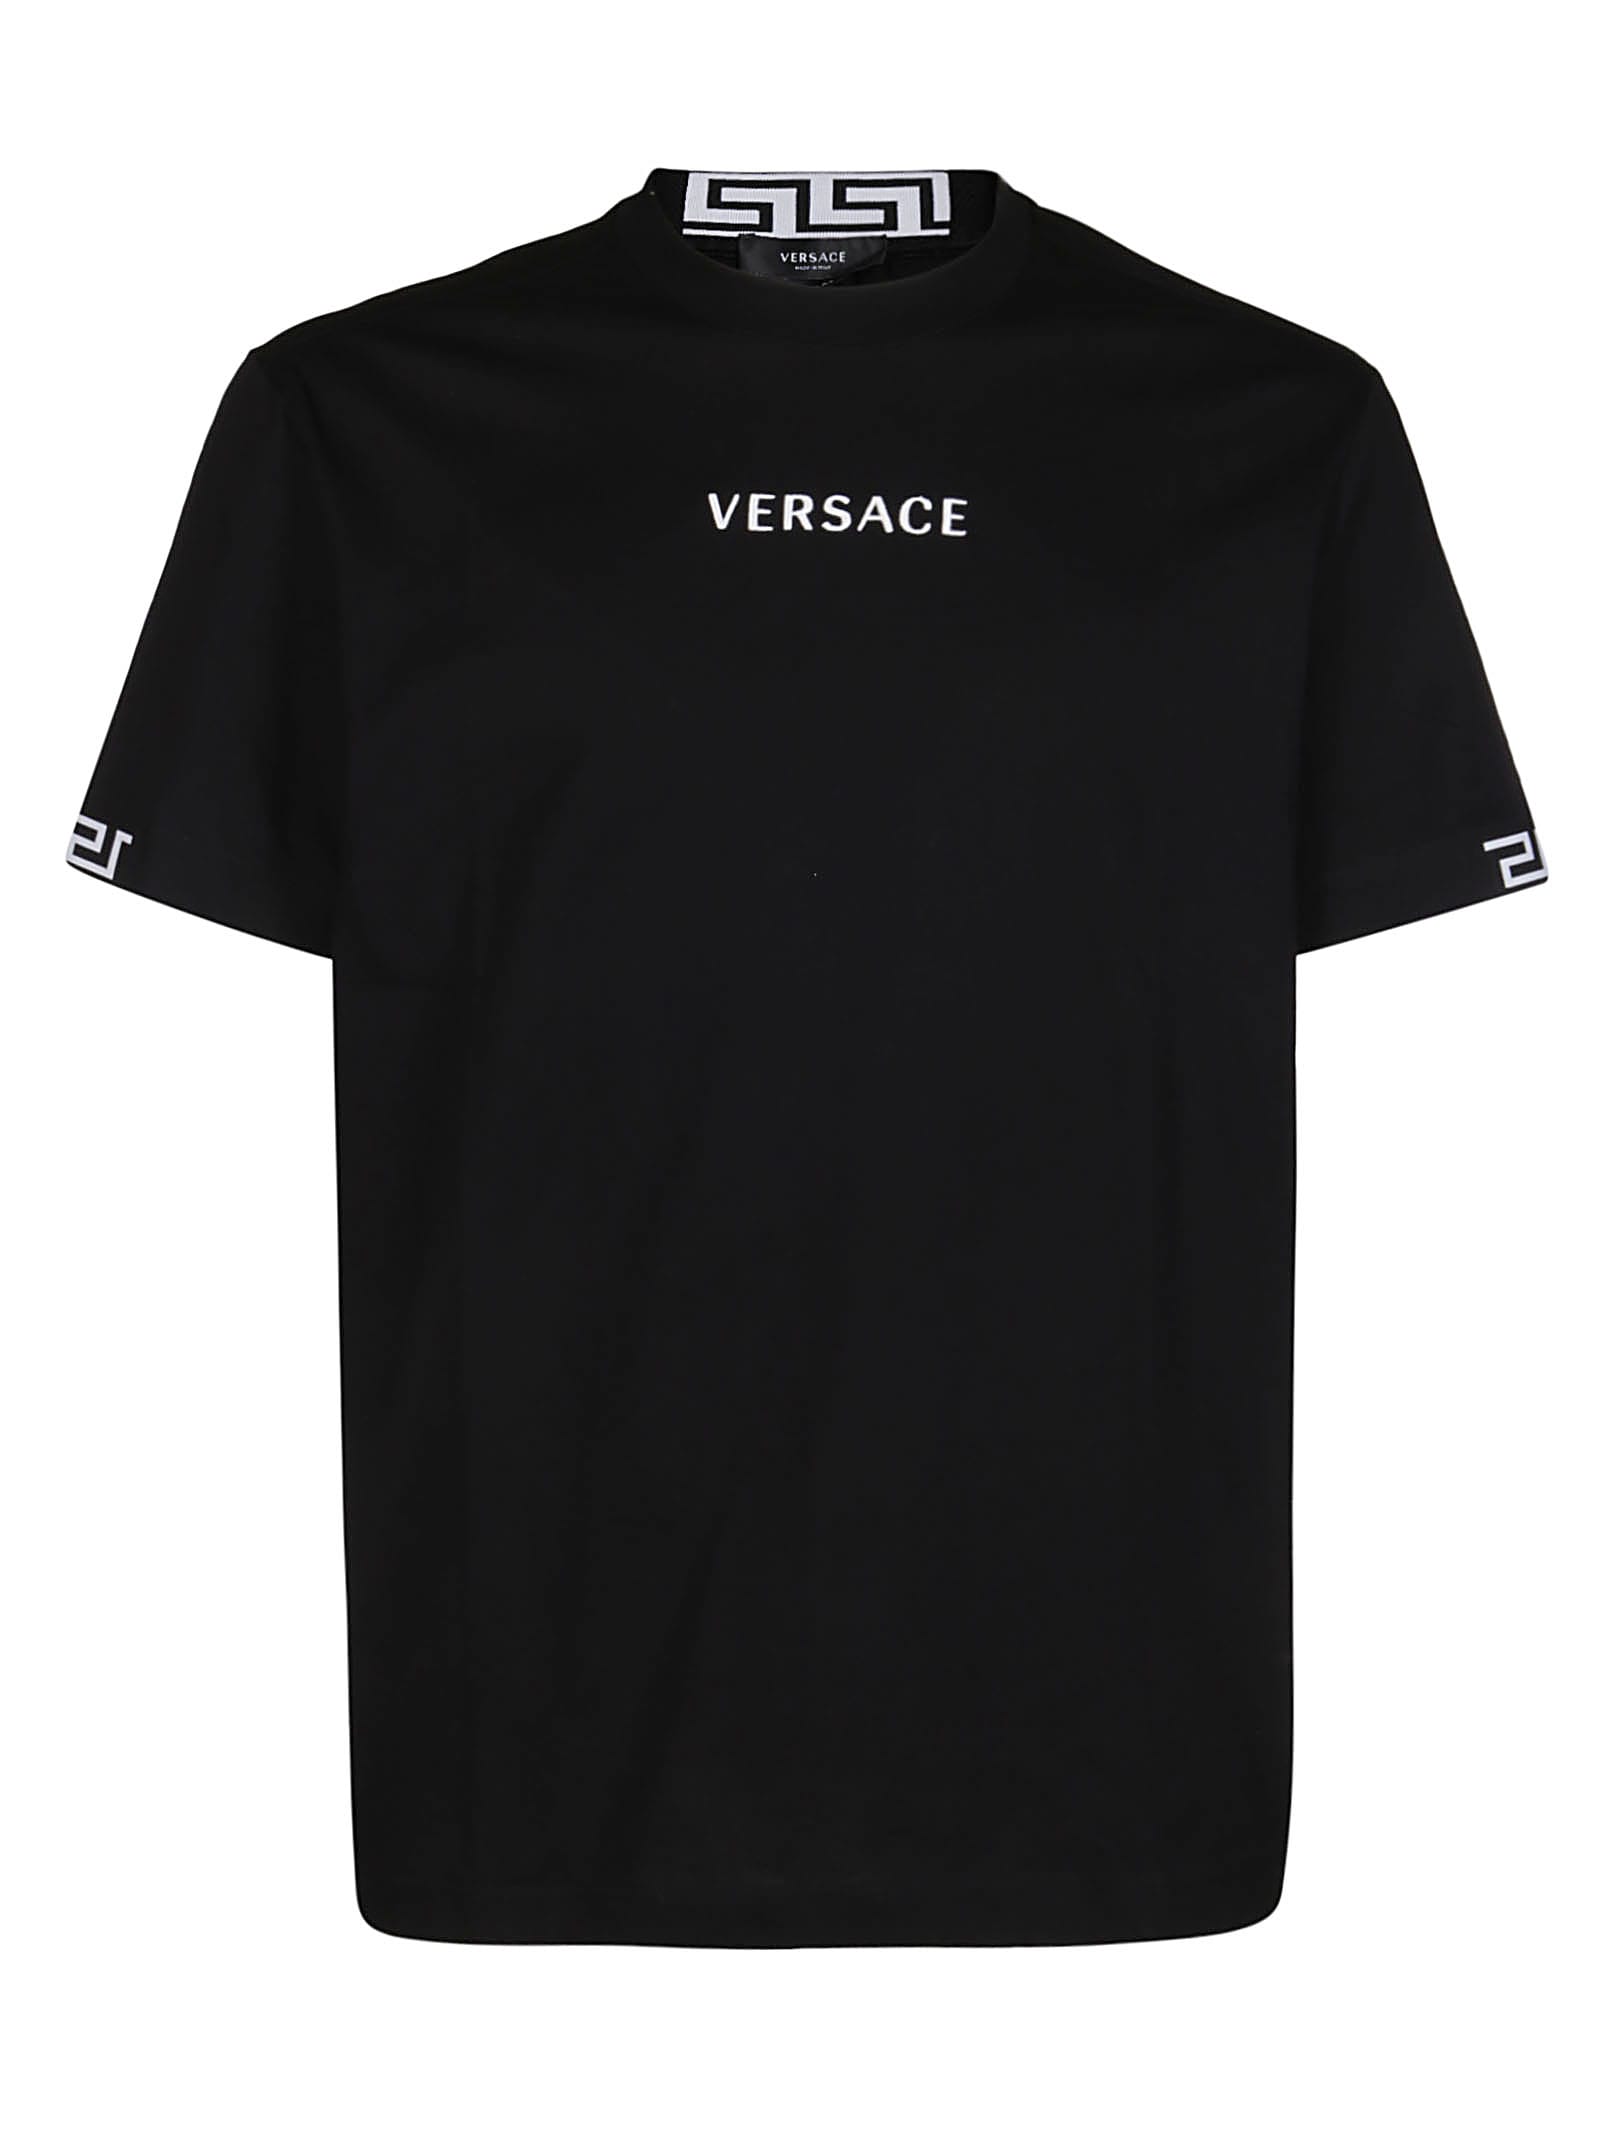 Versace BLACK COTTON T-SHIRT